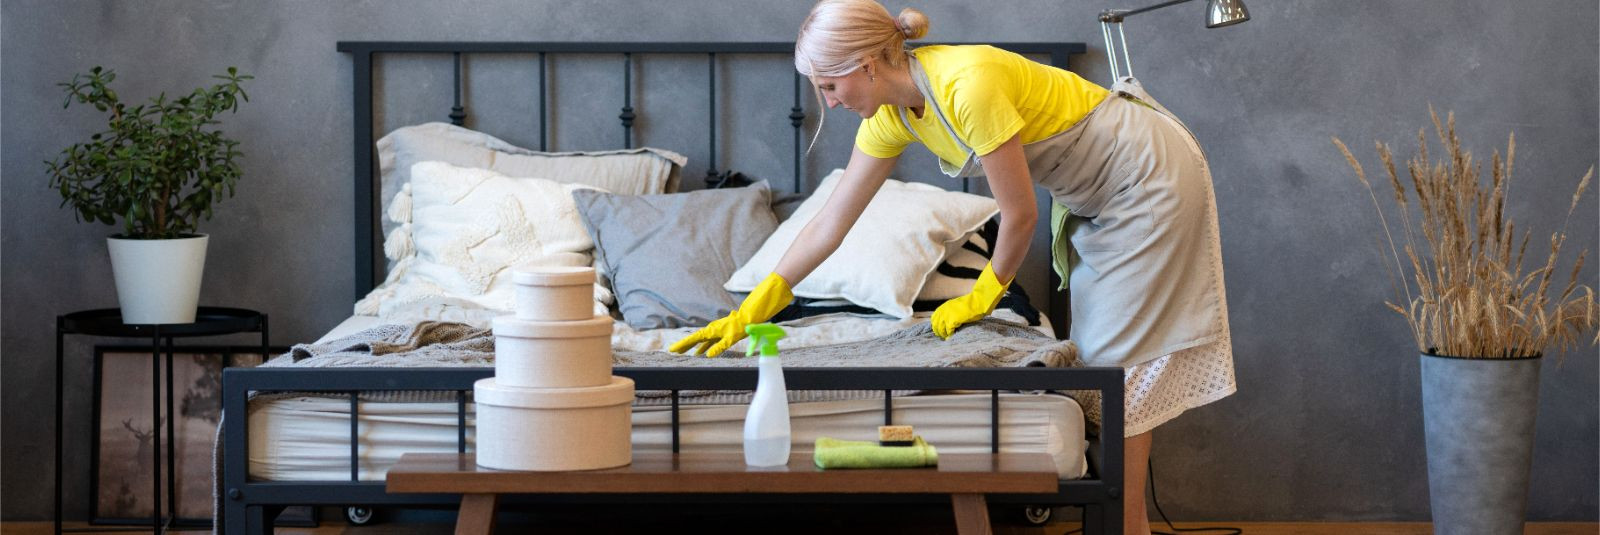 Kodu koristamine võib mõnikord tunduda lõputu ülesandena, mis nõuab palju aega ja energiat. Kuid õige lähenemise ja mõningate lihtsate nippidega saate säästa ae